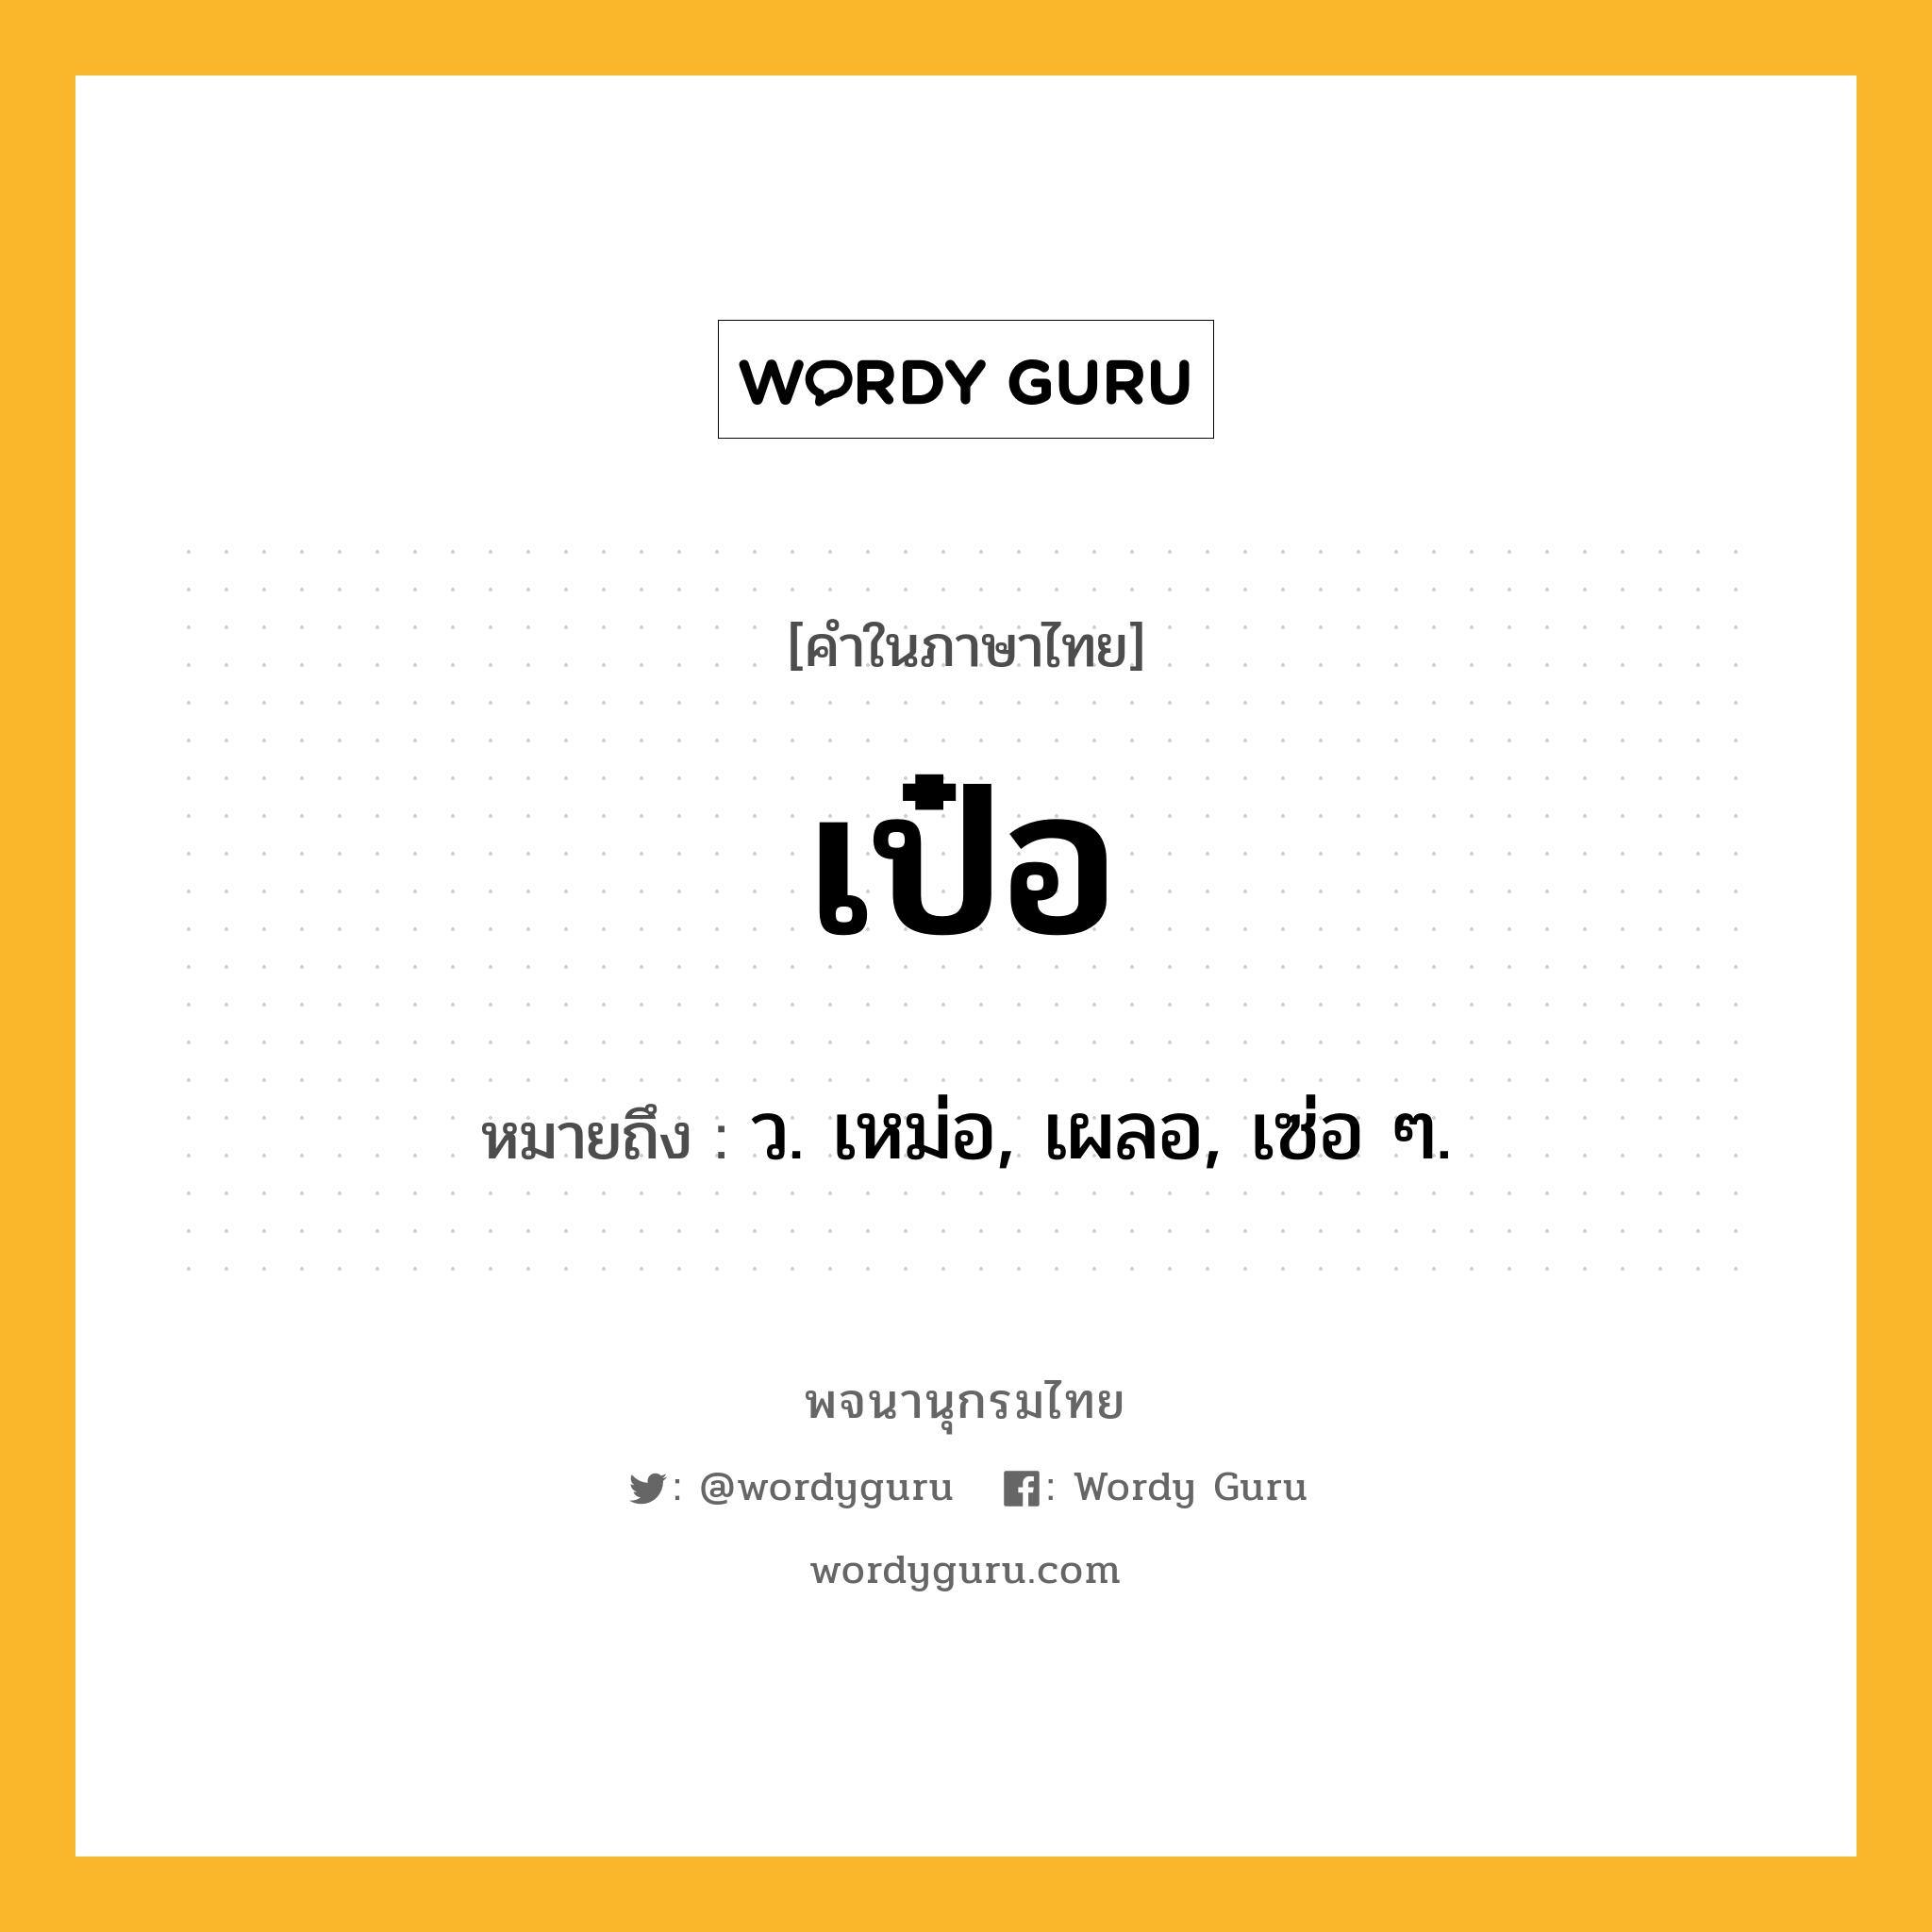 เป๋อ ความหมาย หมายถึงอะไร?, คำในภาษาไทย เป๋อ หมายถึง ว. เหม่อ, เผลอ, เซ่อ ๆ.